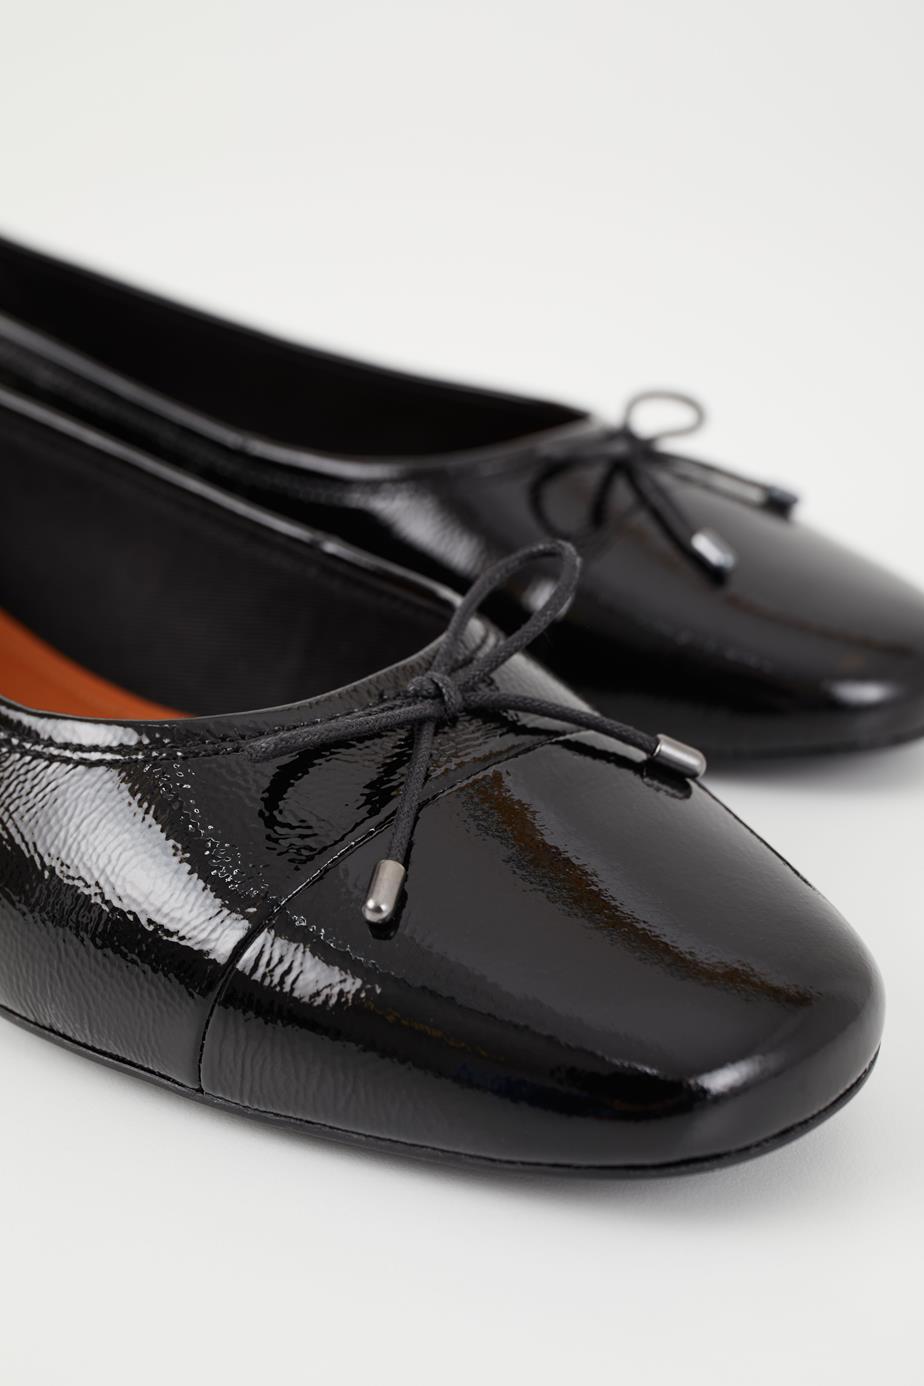 Jolın shoes Black patent leather